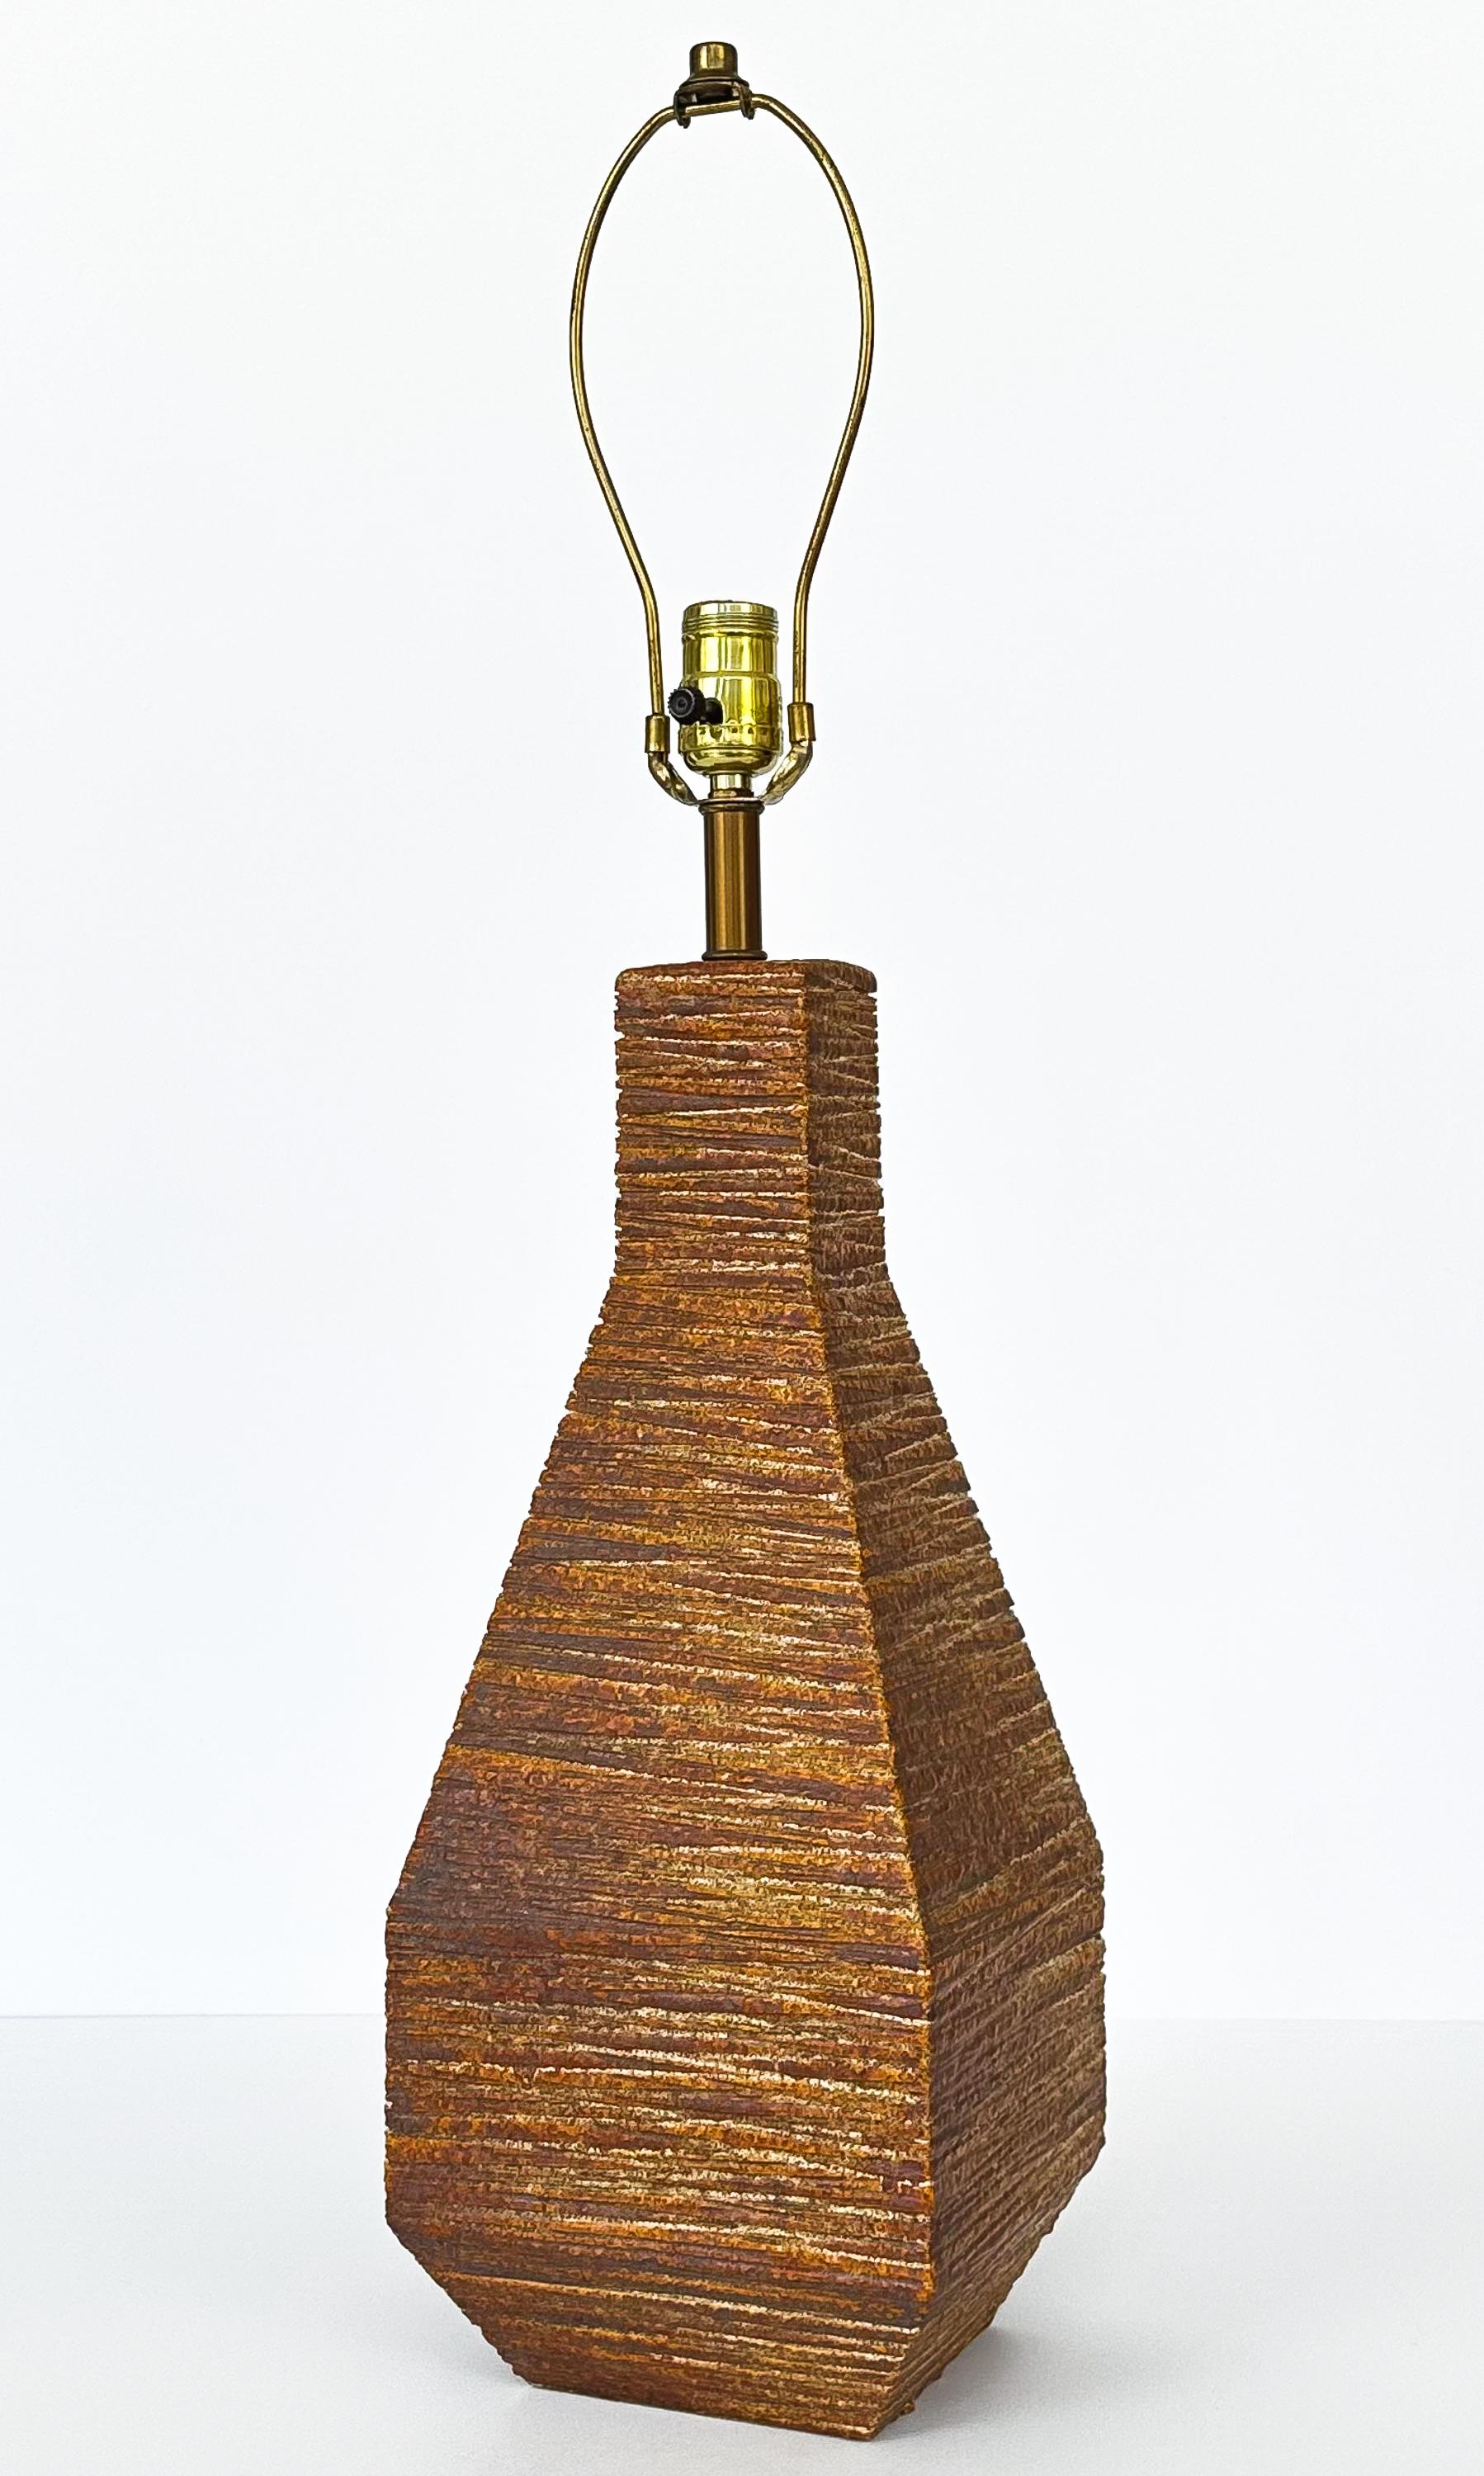 Diese atemberaubende Tischlampe aus strukturierter Keramik aus den 1960er Jahren verkörpert mit ihrer einzigartigen geometrischen Form und der tiefen, farbenprächtigen Glasur die Essenz des modernen Designs der Jahrhundertmitte. Der Körper der